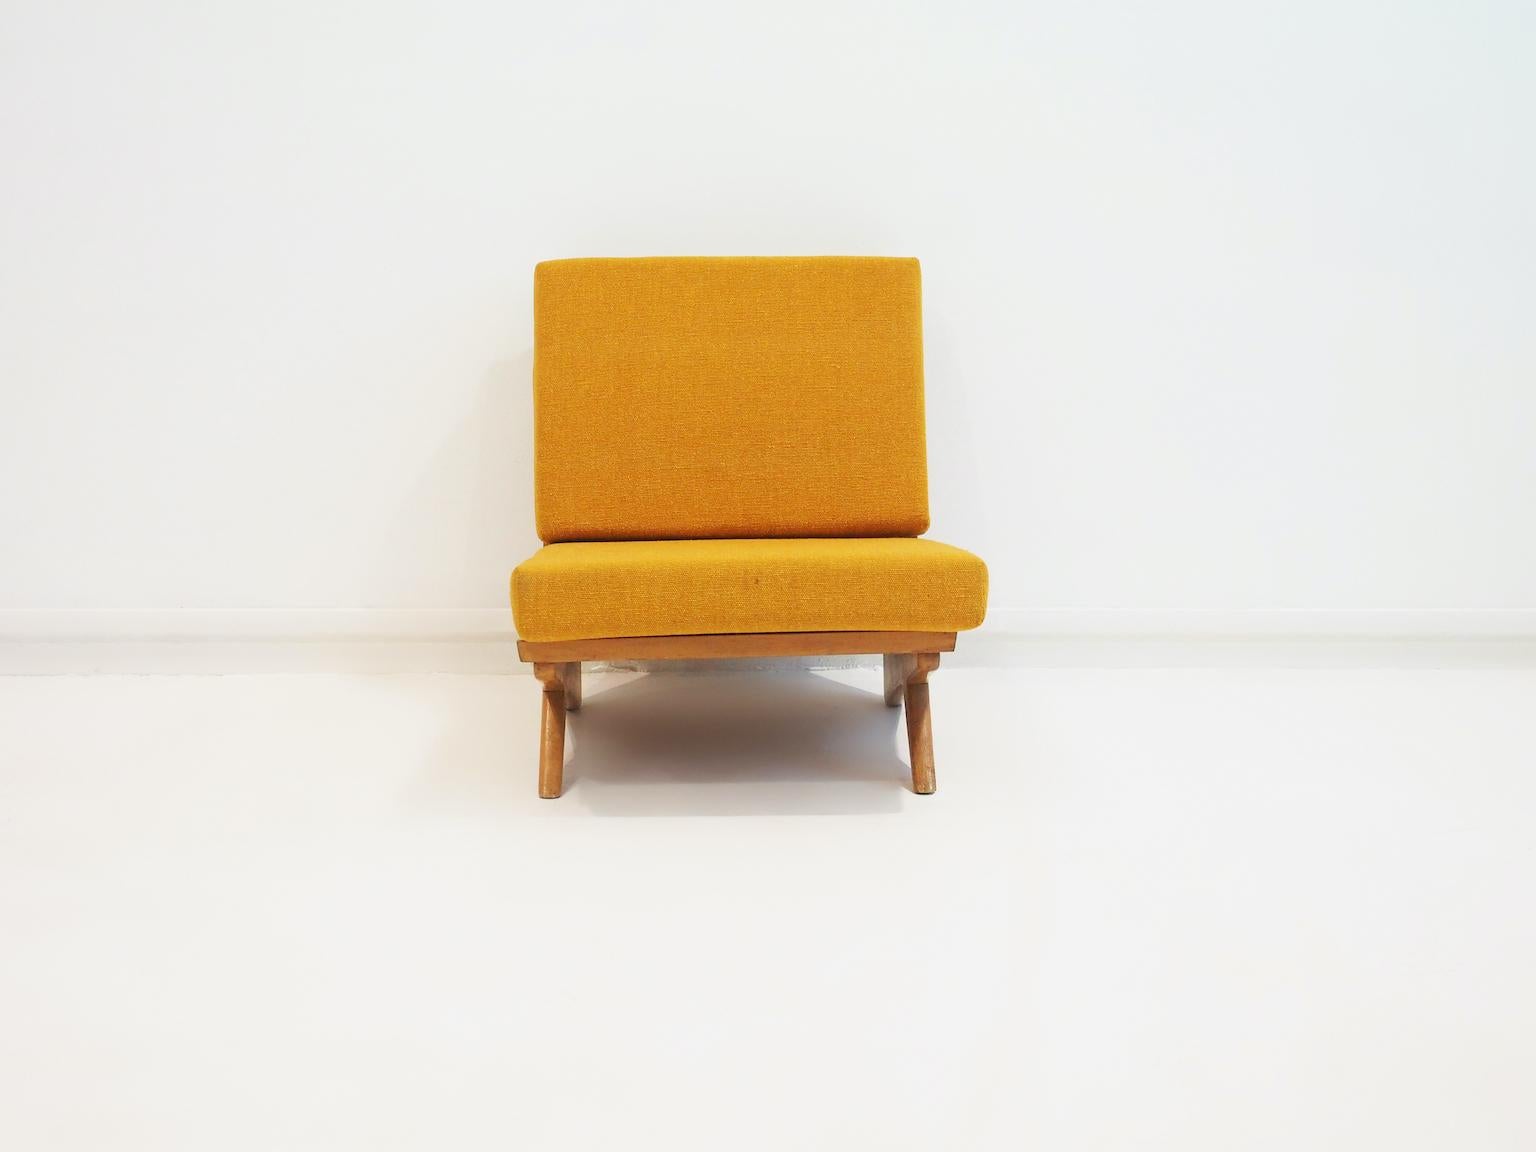 Chaise de salon danoise minimaliste avec structure en bois de Beeche, conçue par Georg Thams dans les années 1970. Coussins d'assise et de dossier libres recouverts d'un tissu en laine de couleur jaune/moutarde.